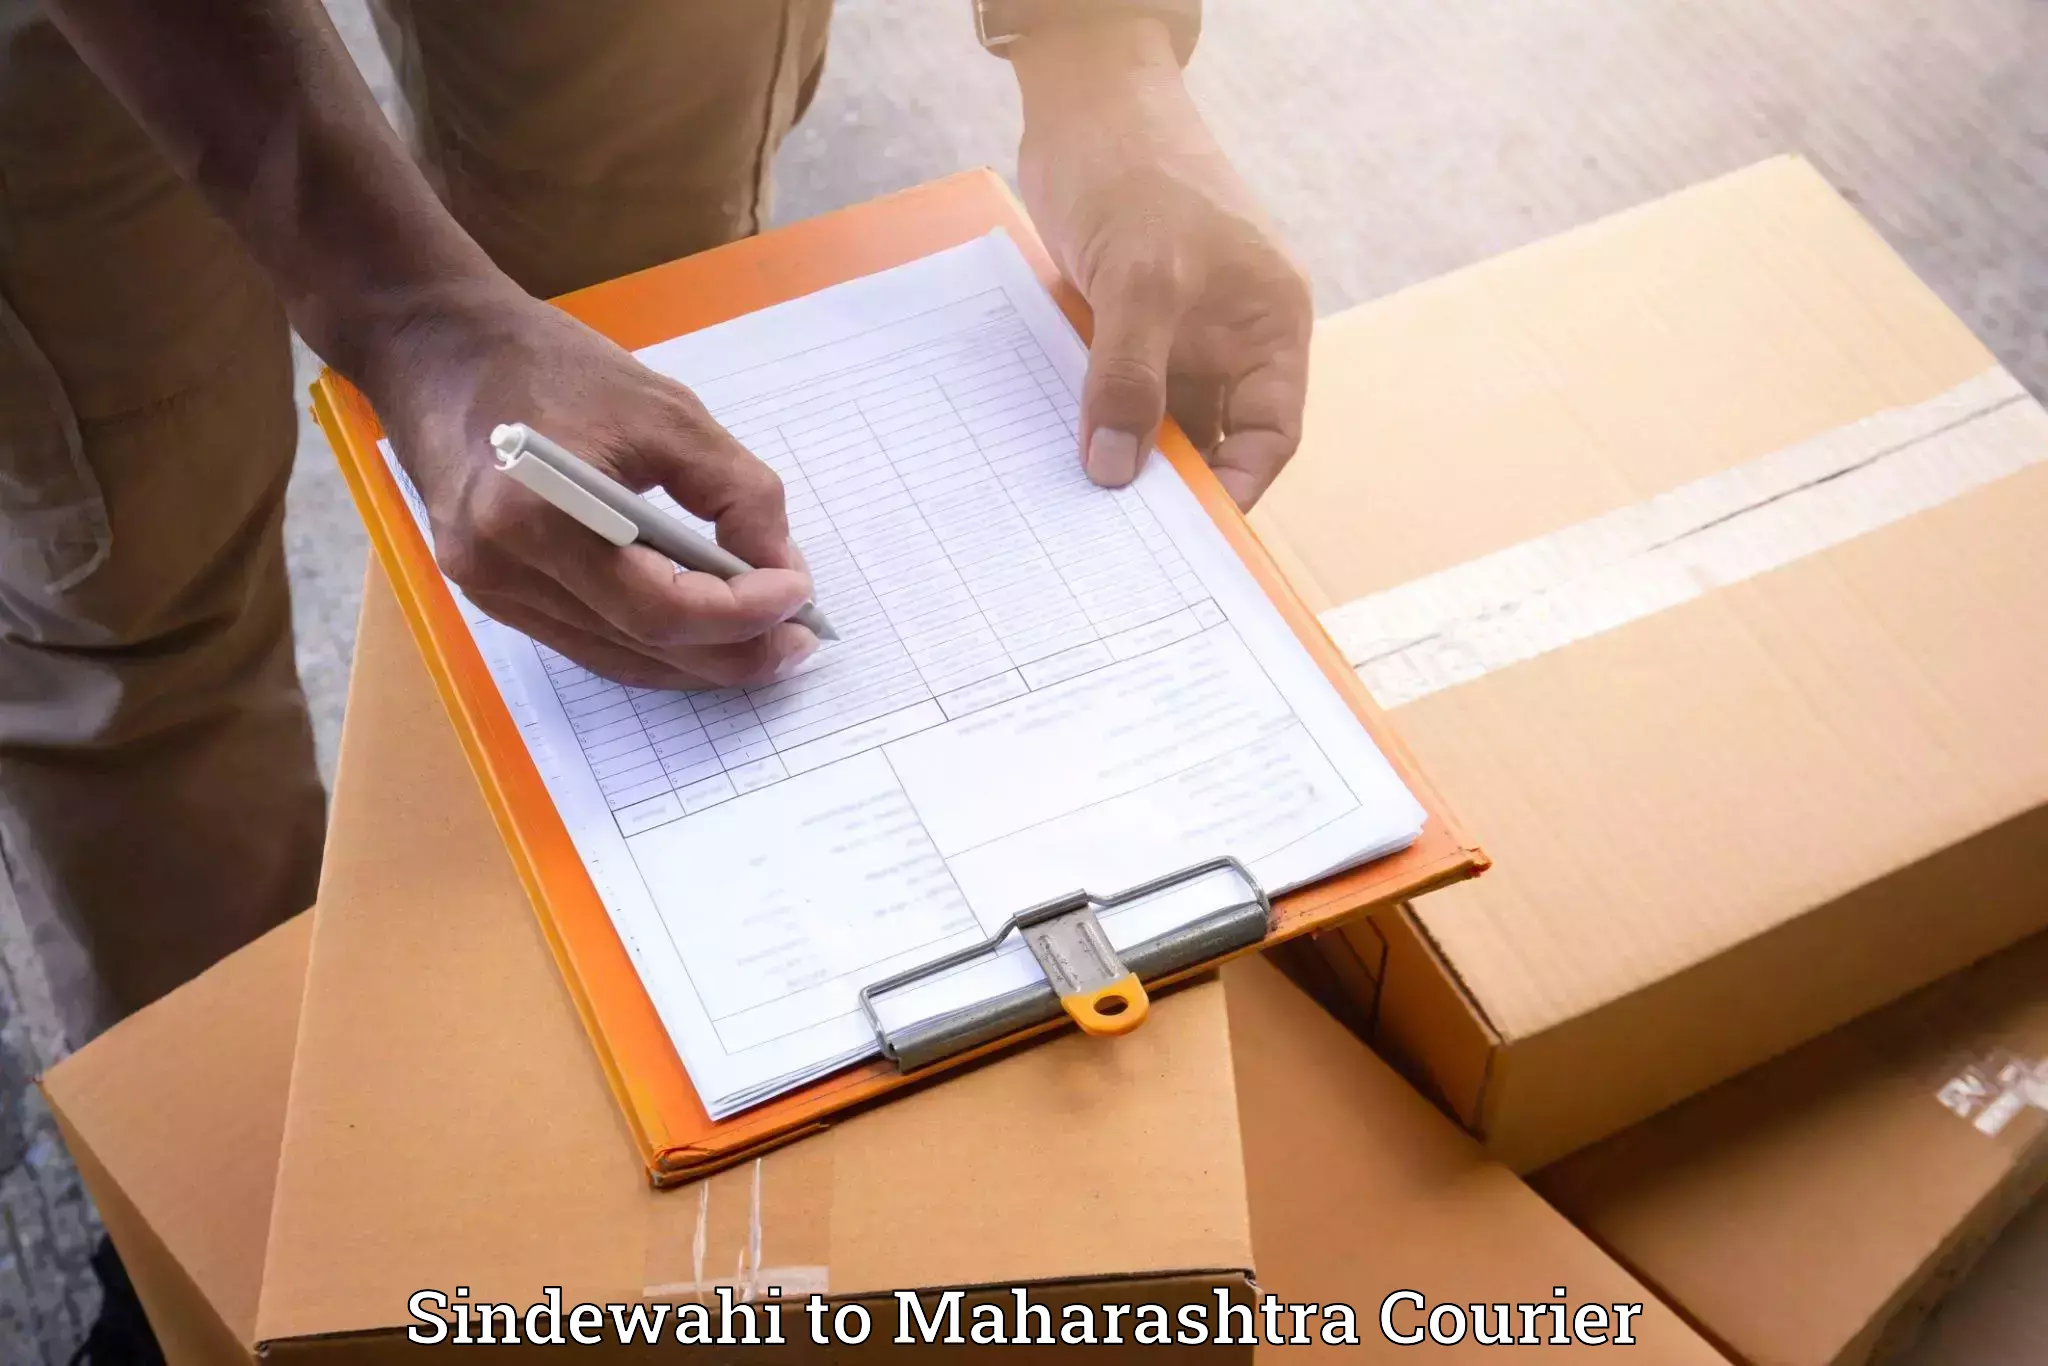 Furniture moving experts Sindewahi to Mumbai Port